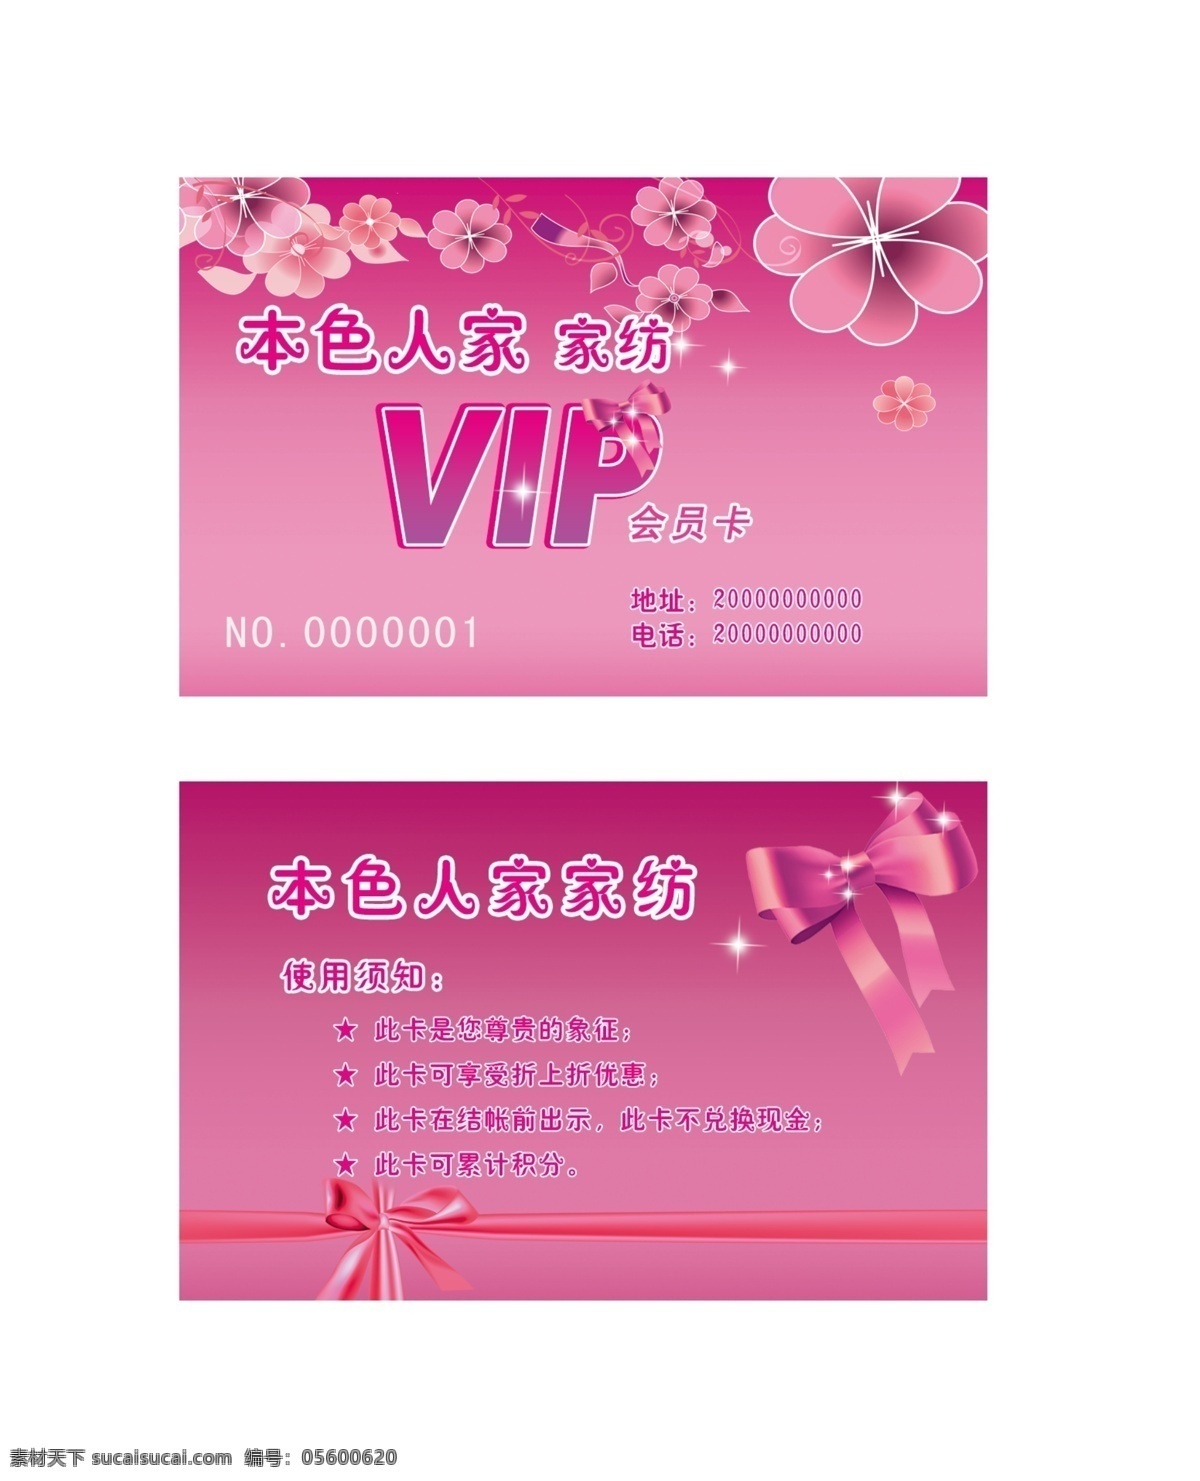 本色 人家 家纺 会员卡 vip 彩带 粉色 广告设计模板 花朵 名片卡片 源文件 名片卡 广告设计名片